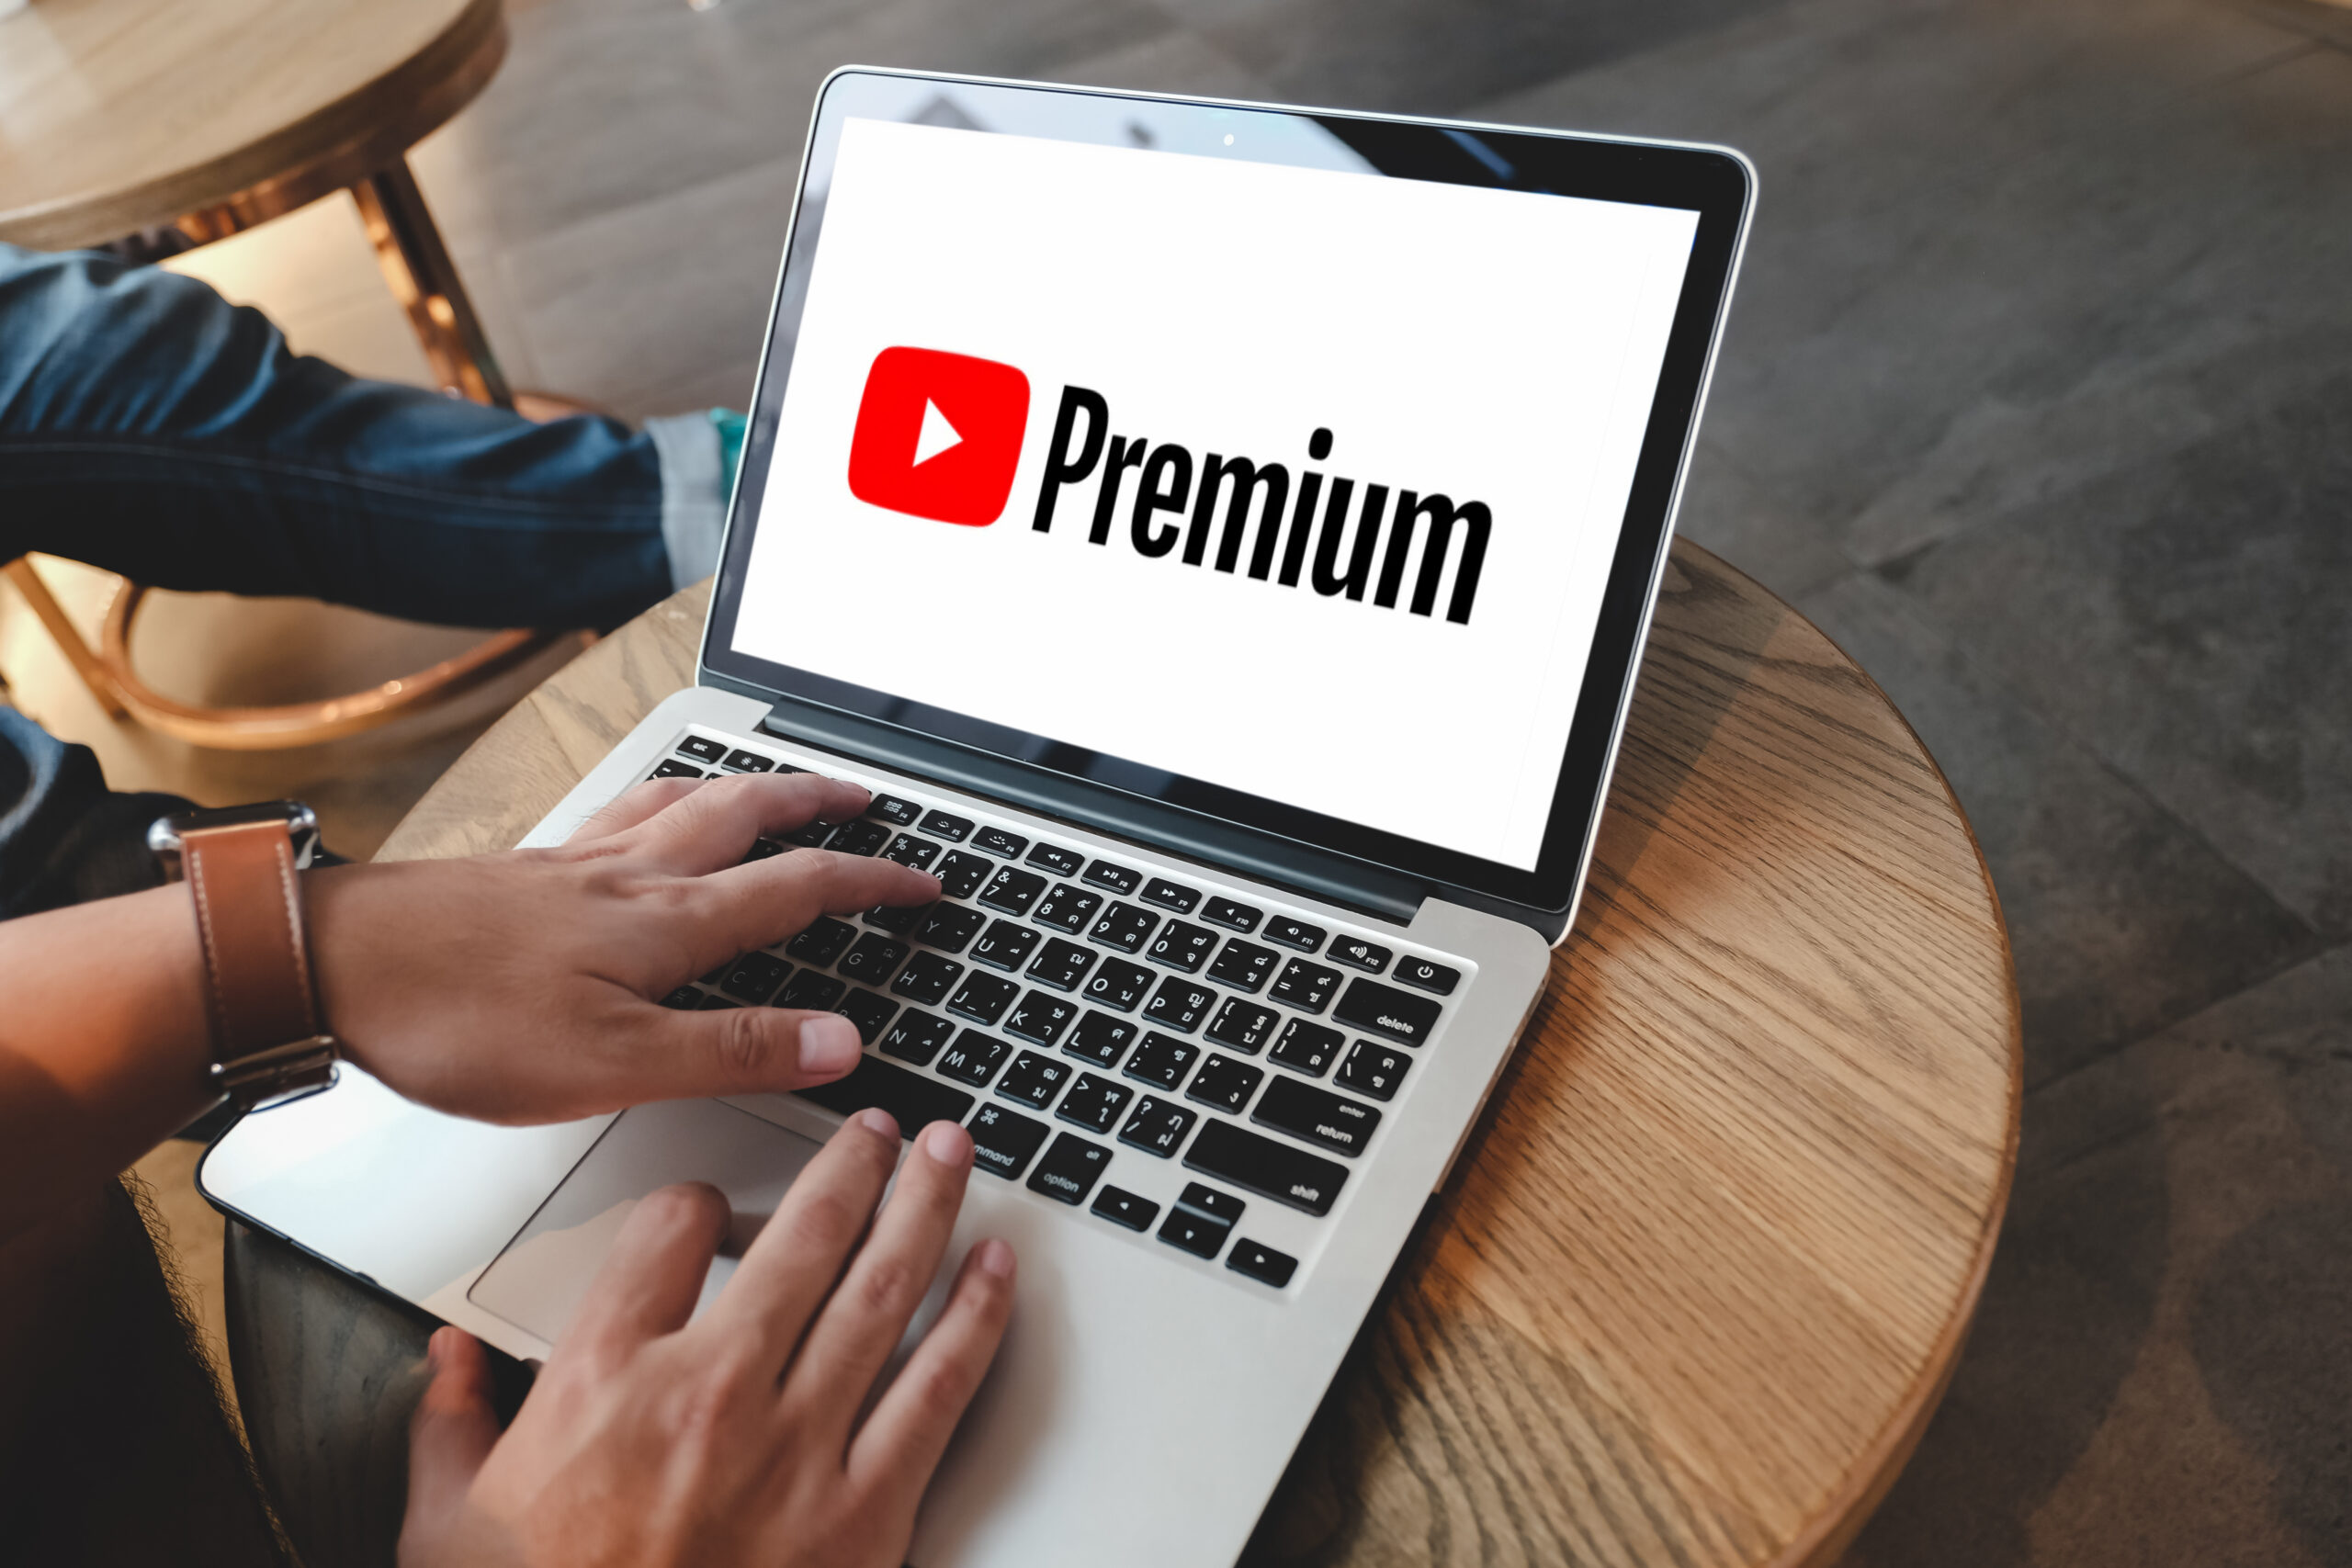 Perbedaan Youtube Premium Dan Biasa. Simak 4 Kelebihan Youtube Premium dan Bedanya dengan